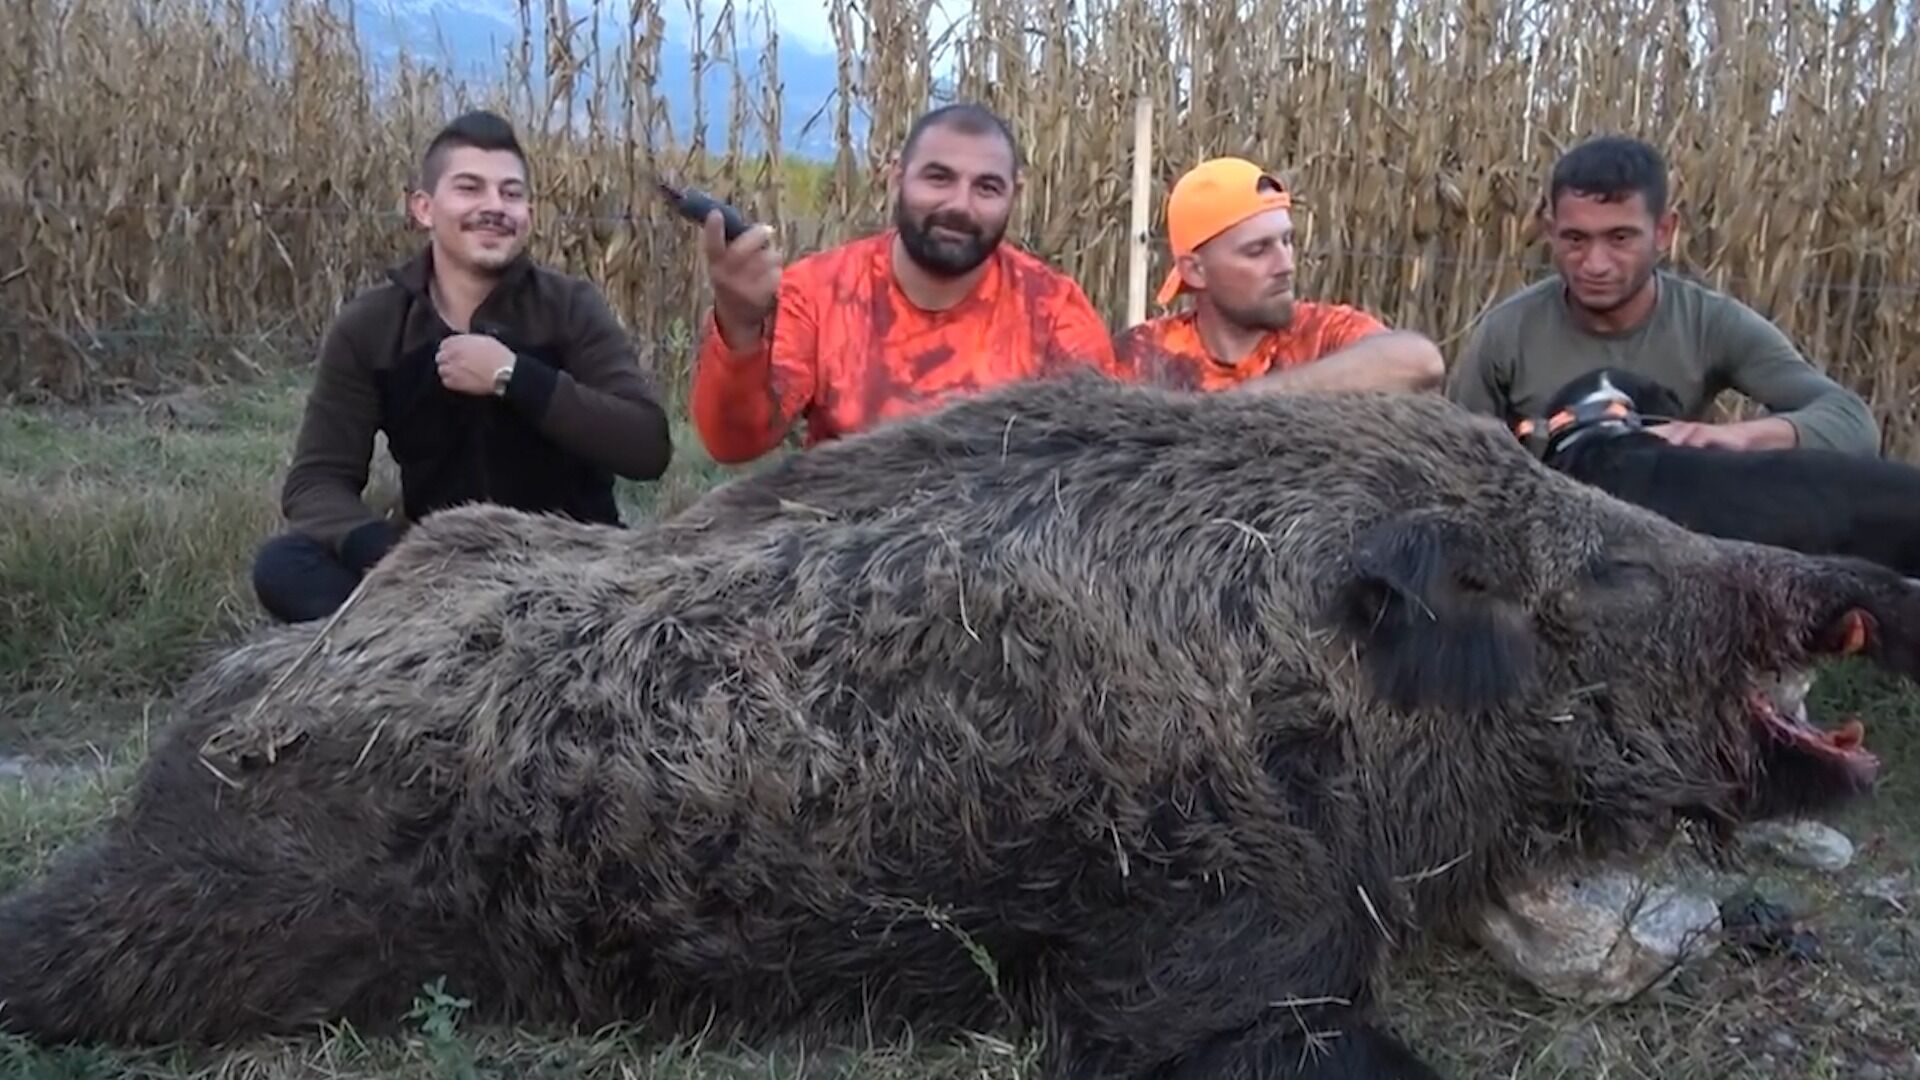 纪录片:猎人带着猎犬围捕野猪群,没想到竟捕到一只超大的野猪 